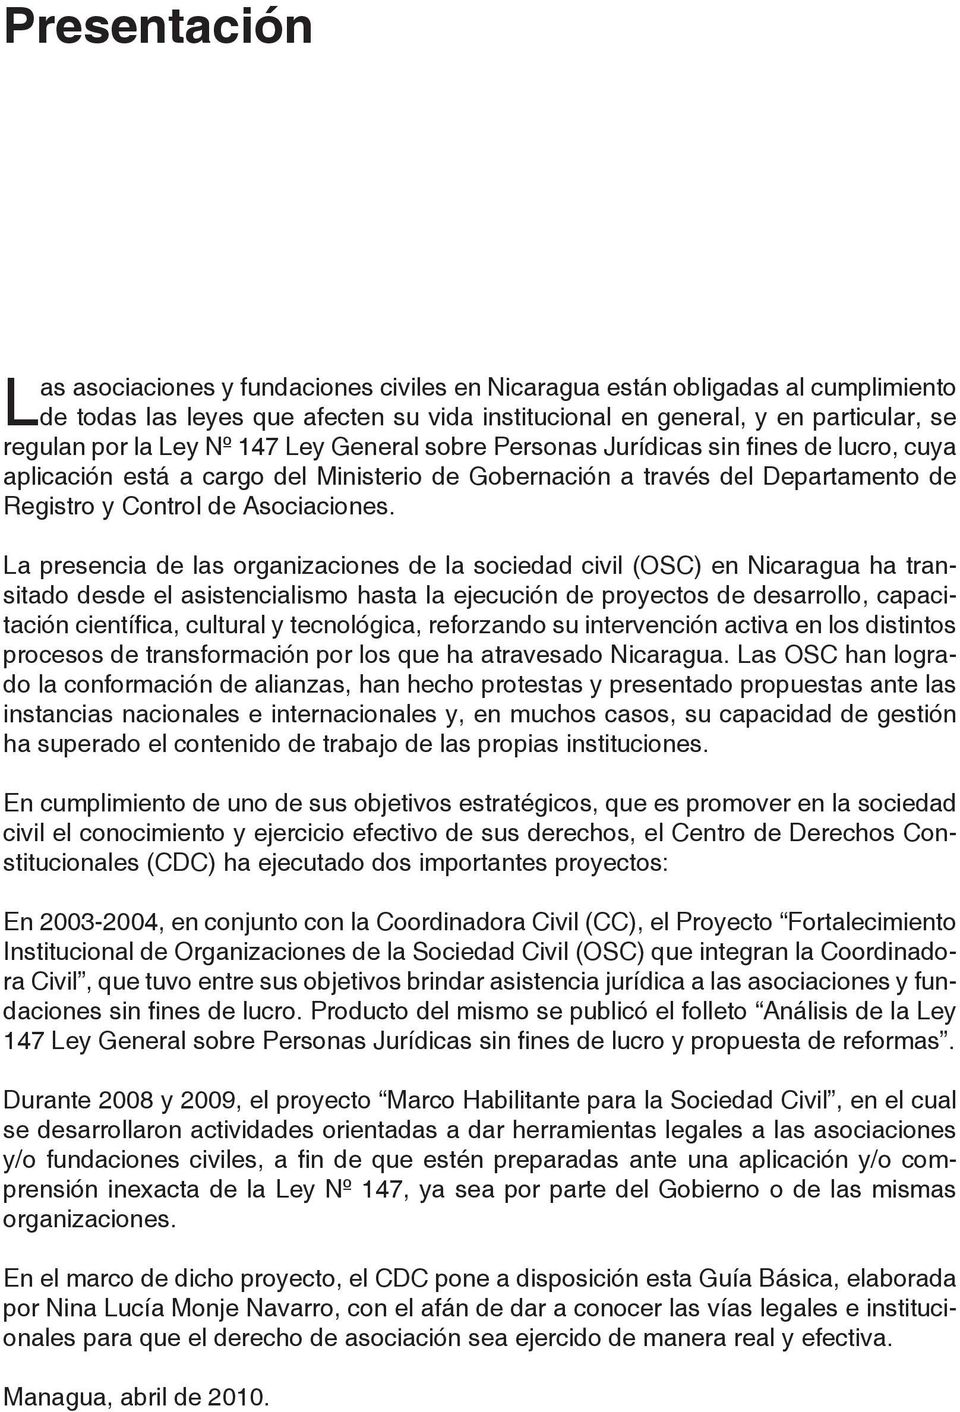 La presencia de las organizaciones de la sociedad civil (OSC) en Nicaragua ha transitado desde el asistencialismo hasta la ejecución de proyectos de desarrollo, capacitación científica, cultural y